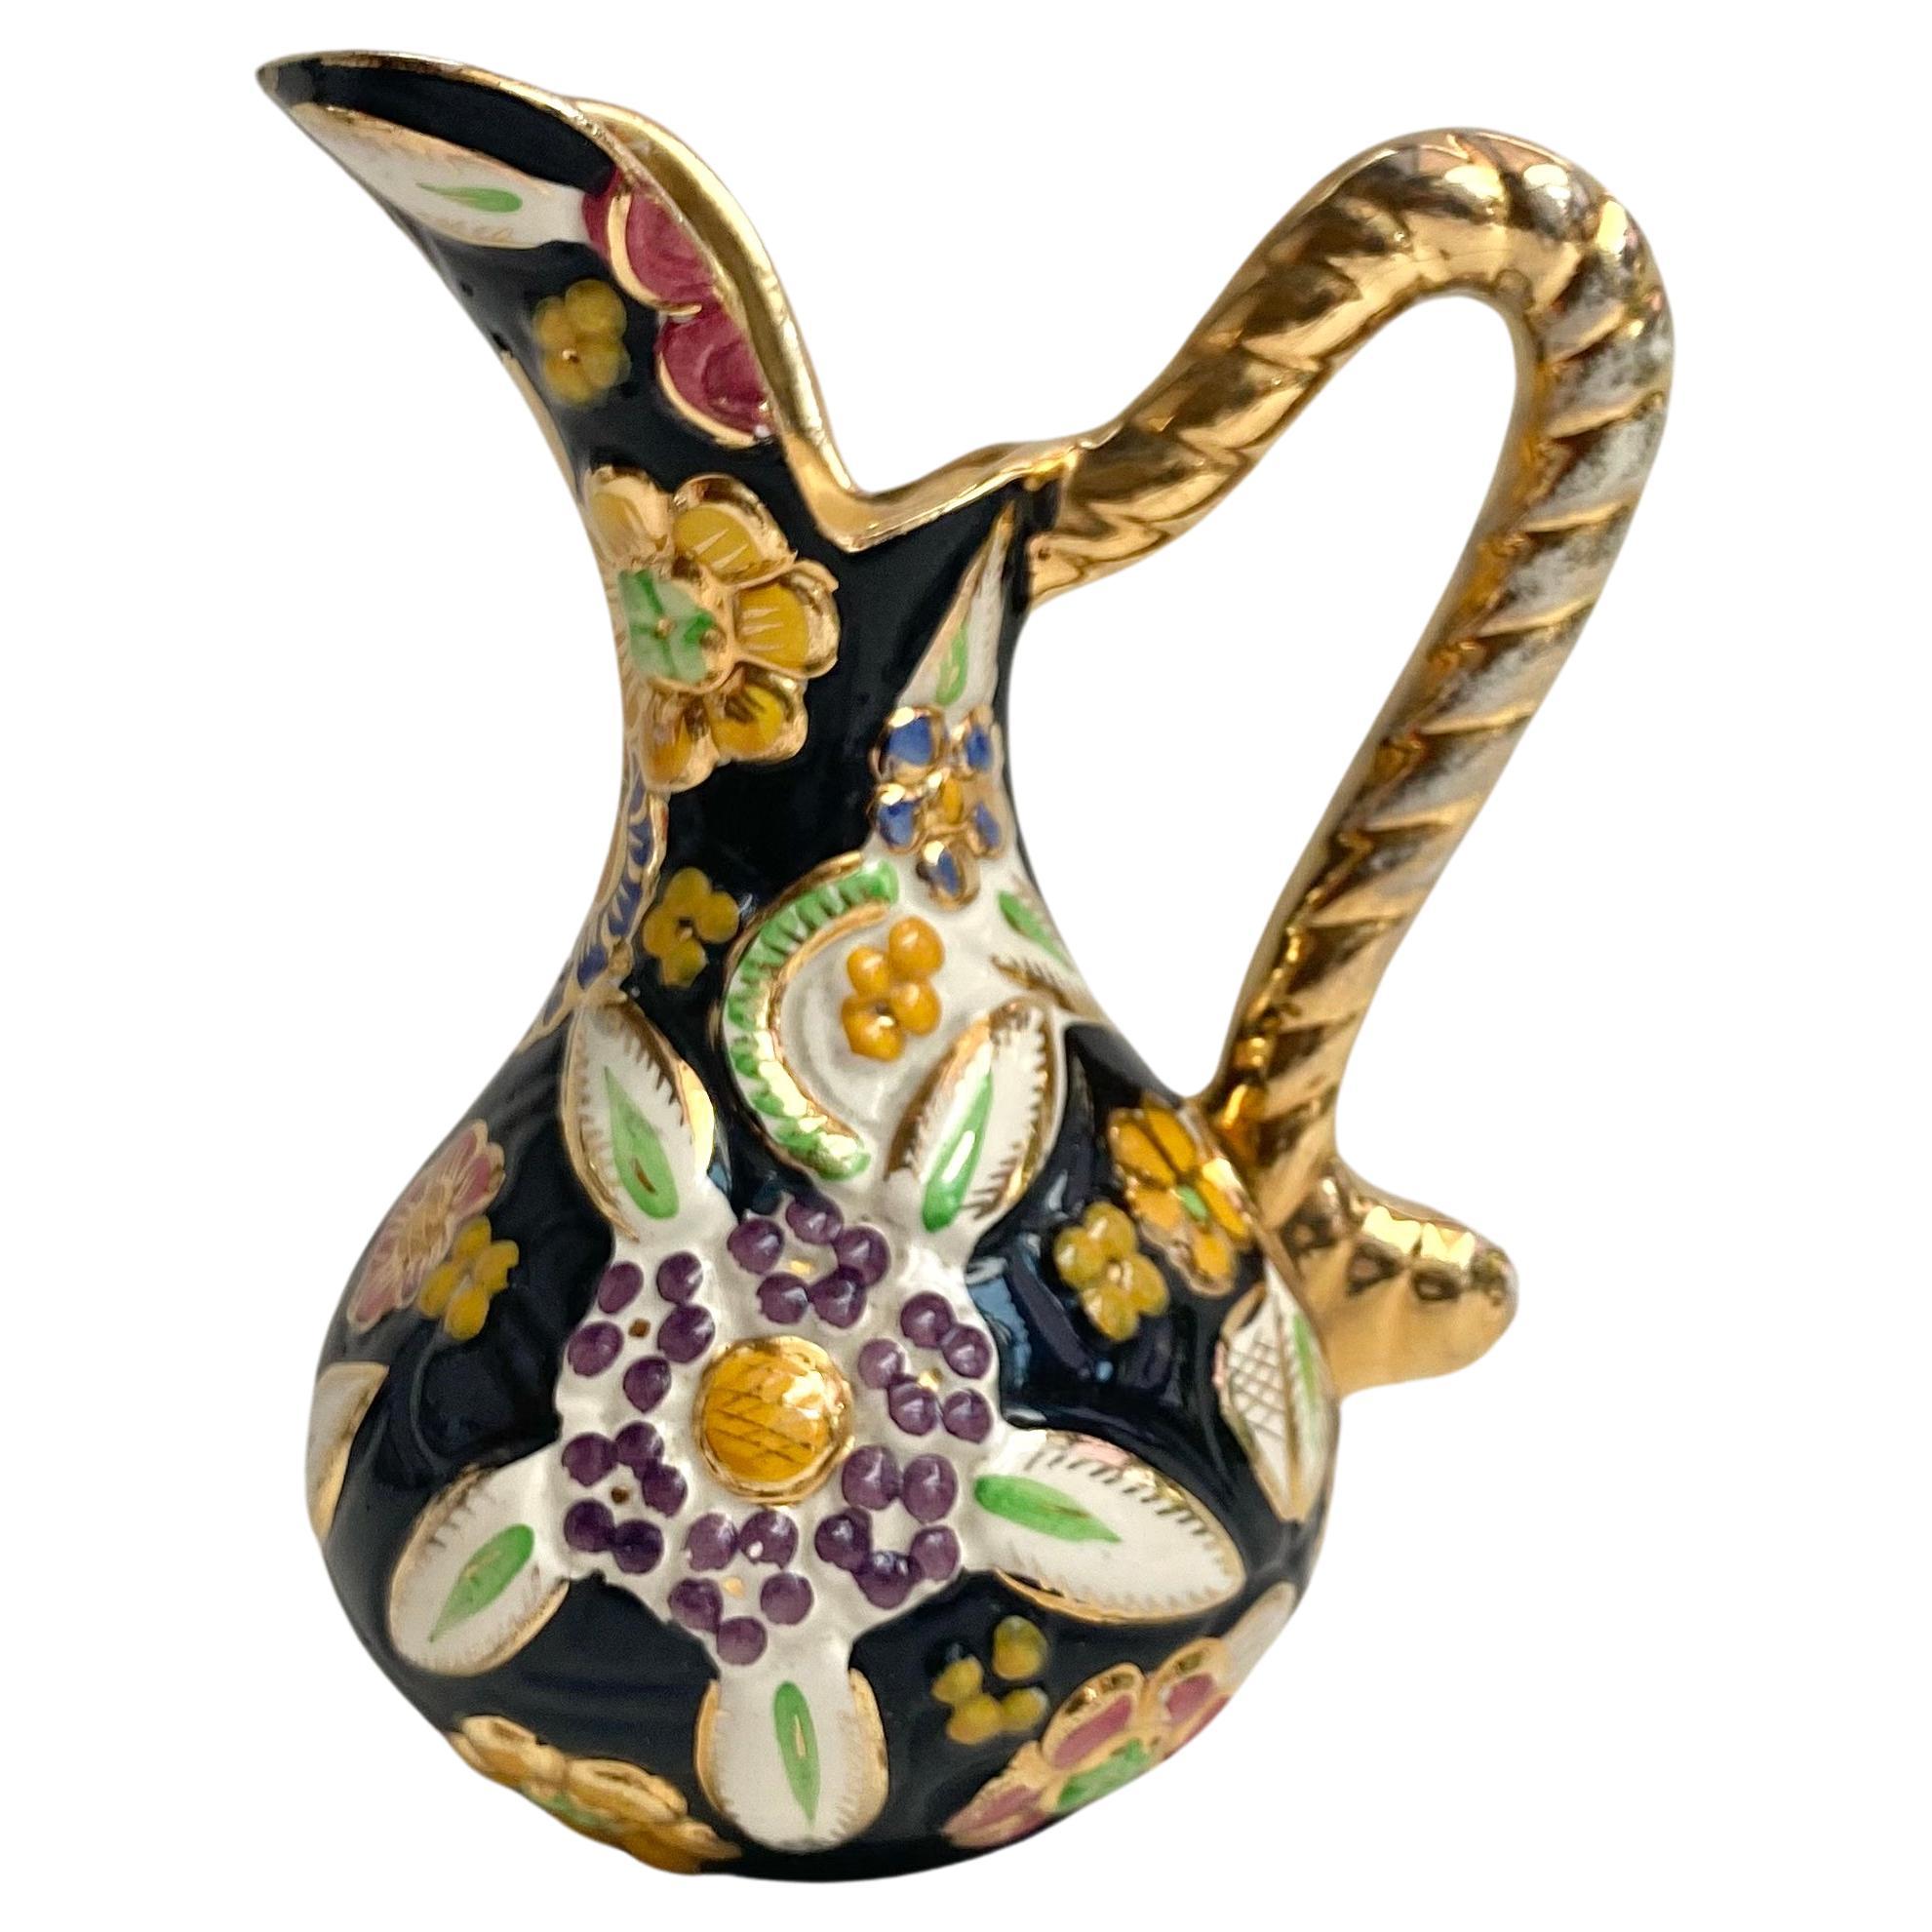 Vase Enamelled Ceramic Vintage Pitcher Hubert Bequet Floral Vase Belgium 1950 For Sale